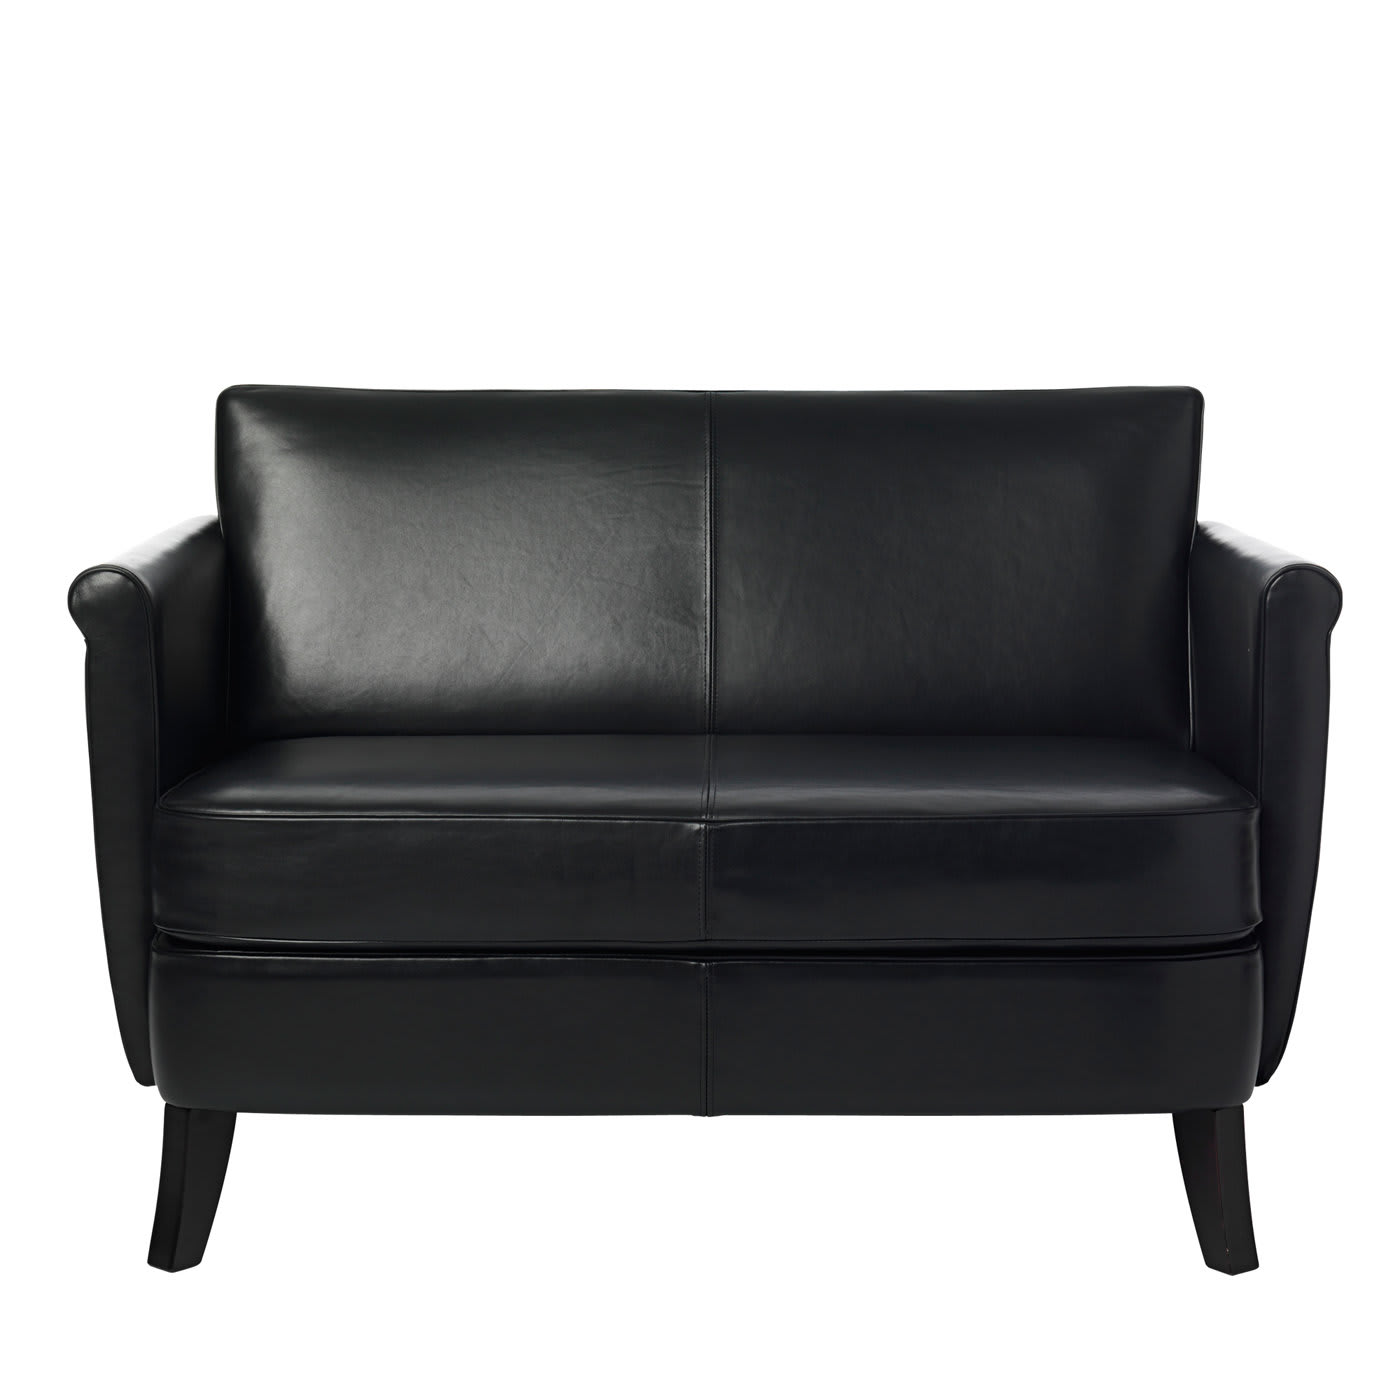 Undersized Black Leather 2-Seater Sofa by Maison Margiela - Baleri Italia